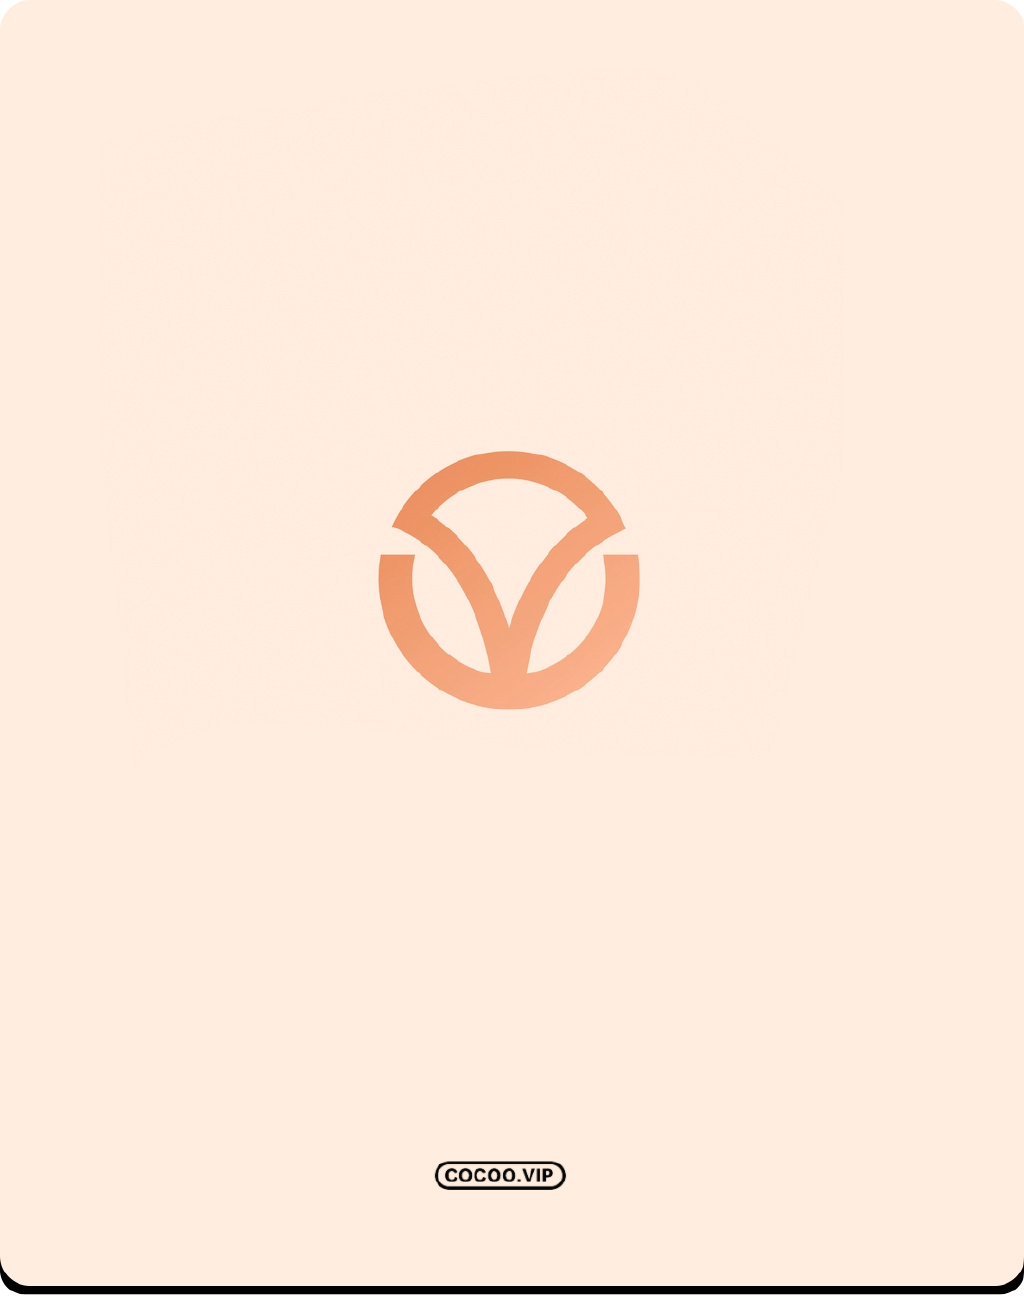 【平面设计】零基础学习品牌VI设计如何让logo设计更突出